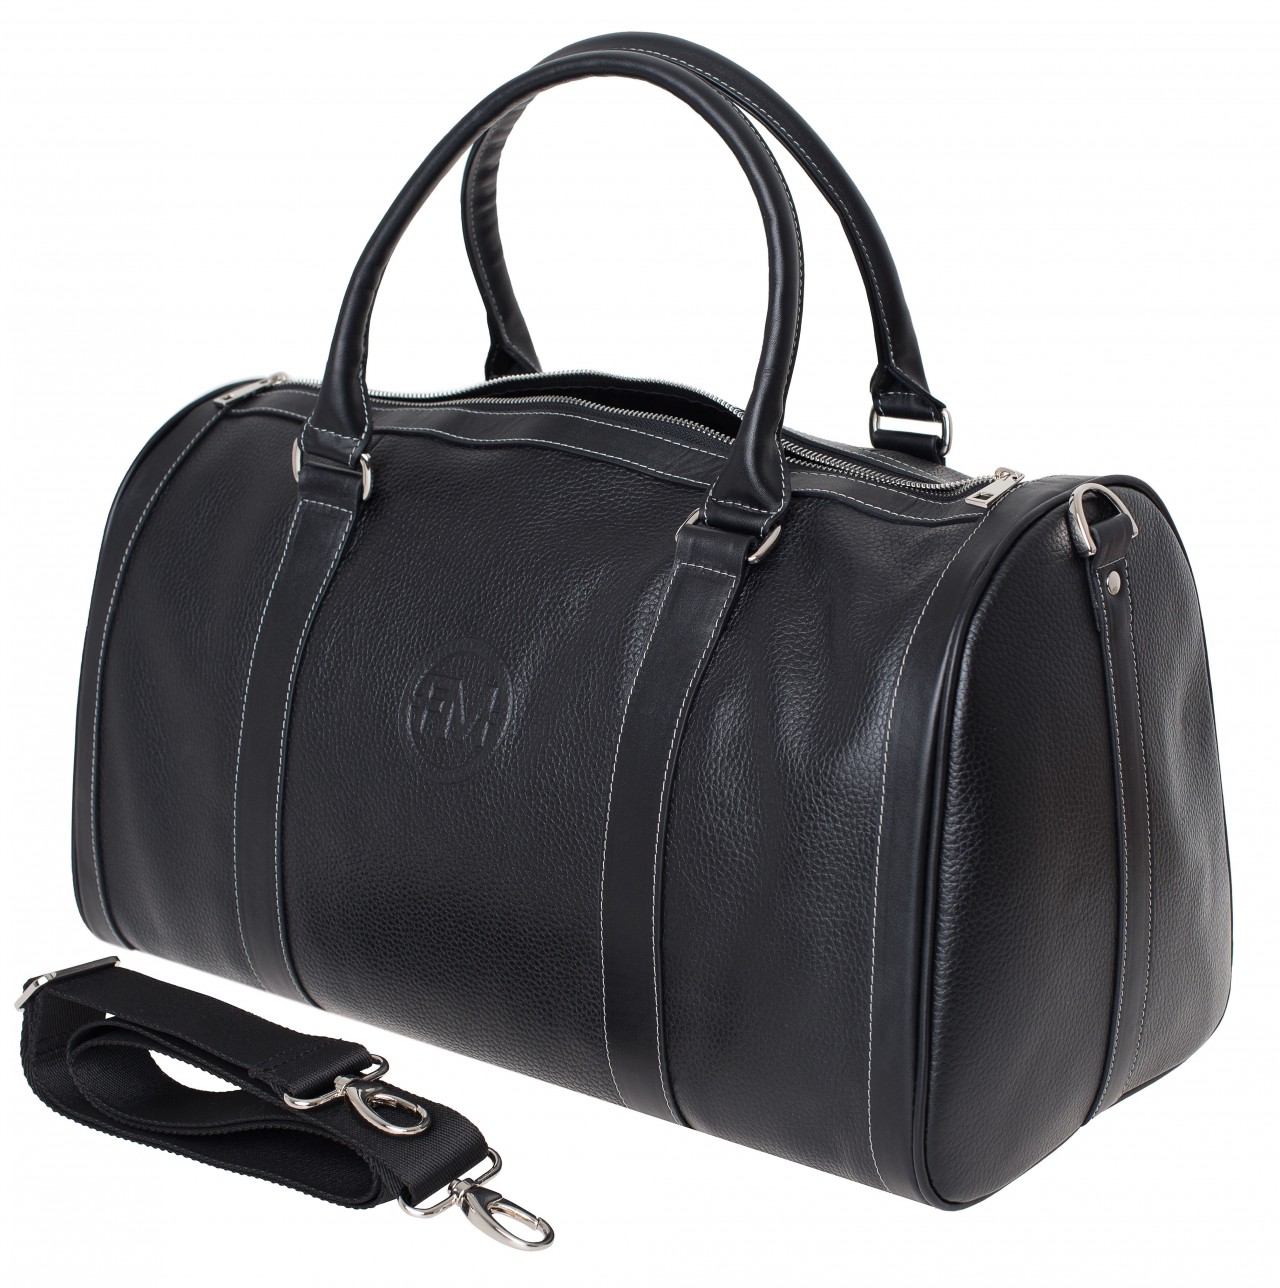 Дорожная сумка унисекс Franchesco Mariscotti 6-425к черная, 47х26х23 см